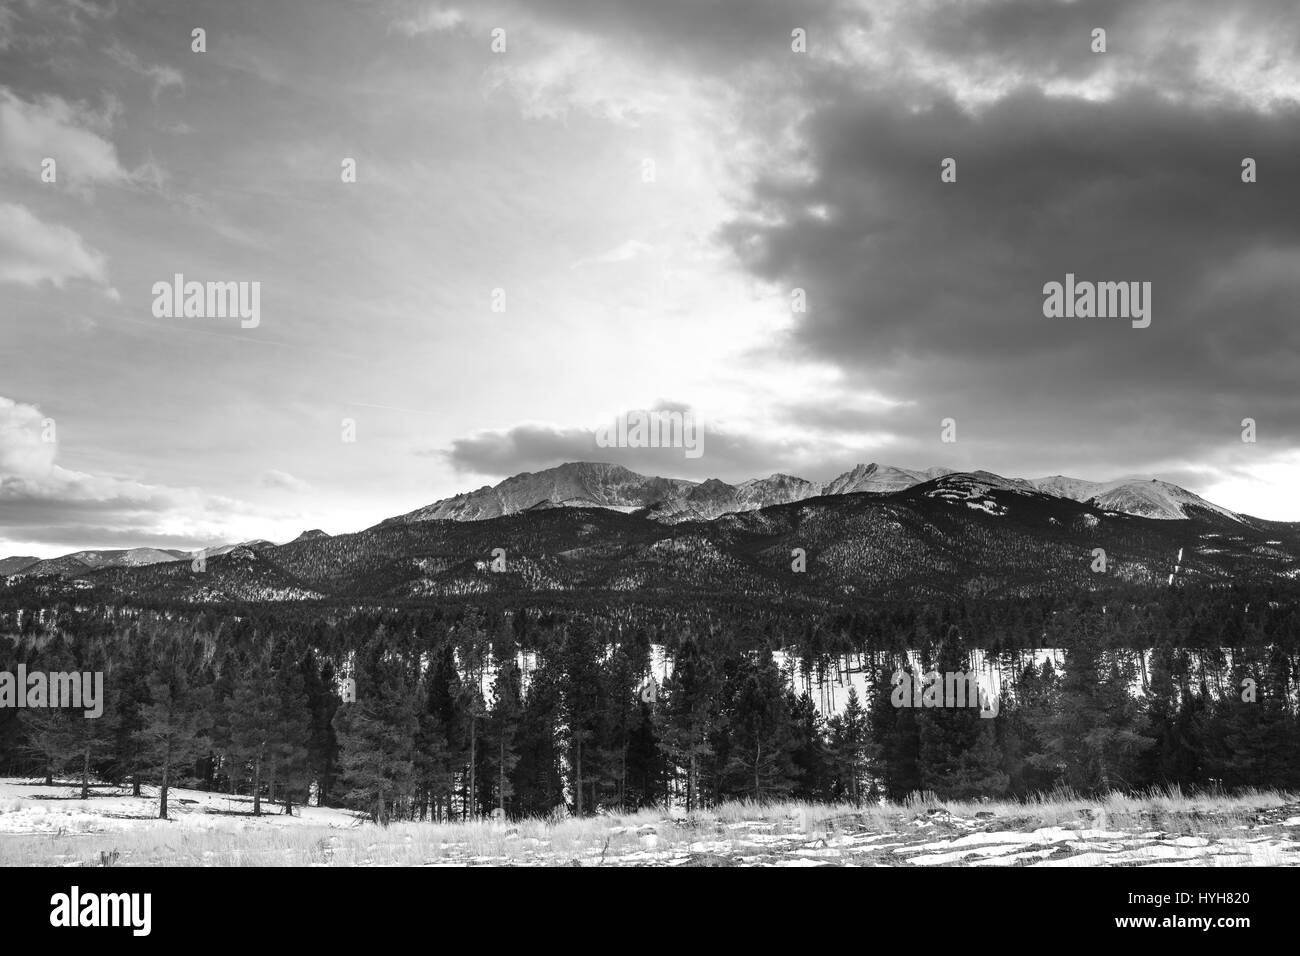 Montagnes enneigées sur une propriété privée avec une entrée interdite signe. L'allée mène à un champ ouvert avec une vue panoramique sur les montagnes. Banque D'Images